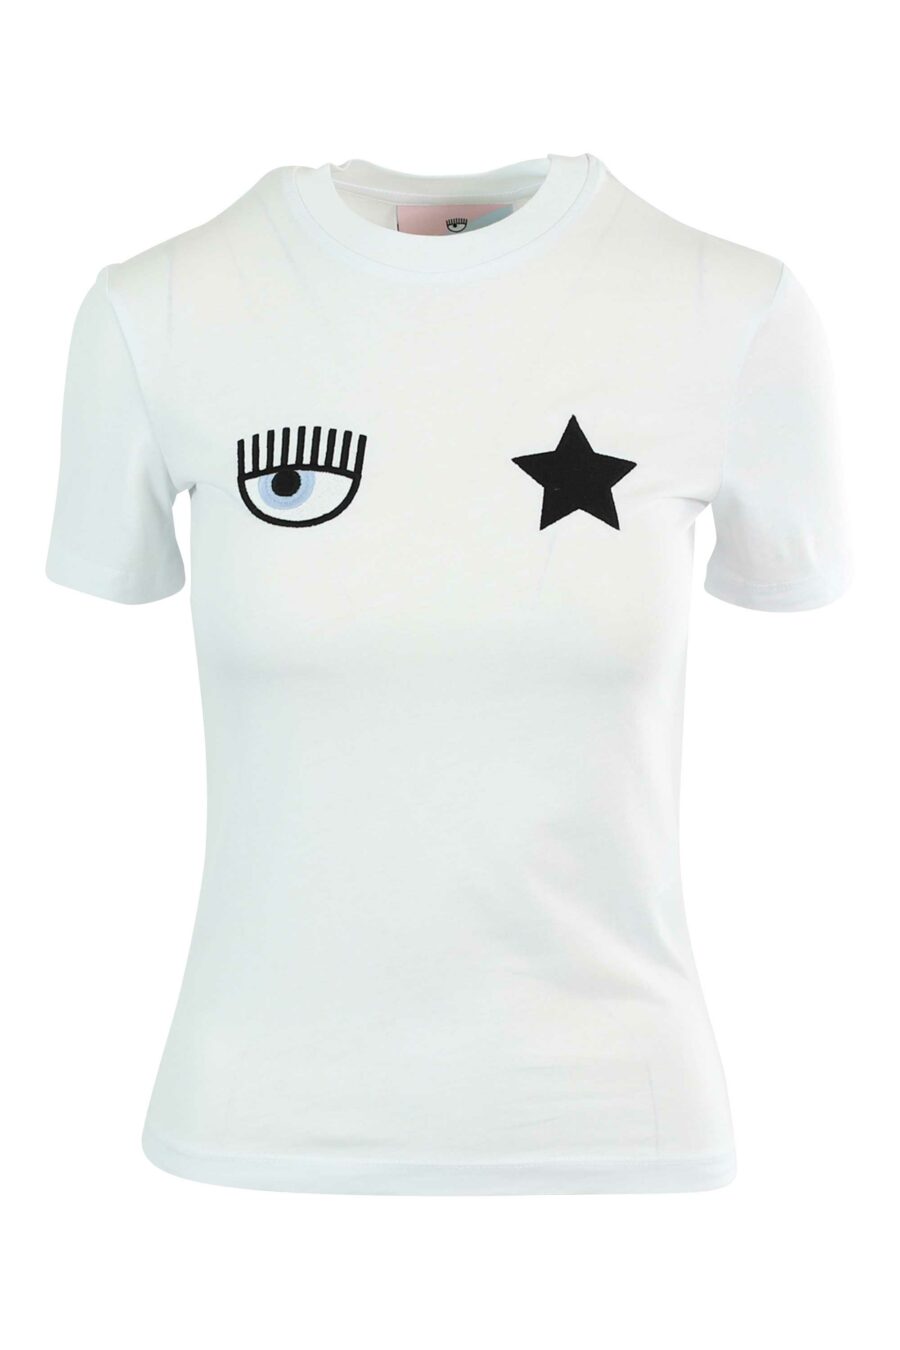 T-shirt branca com o logótipo do olho e da estrela - 8052672416728